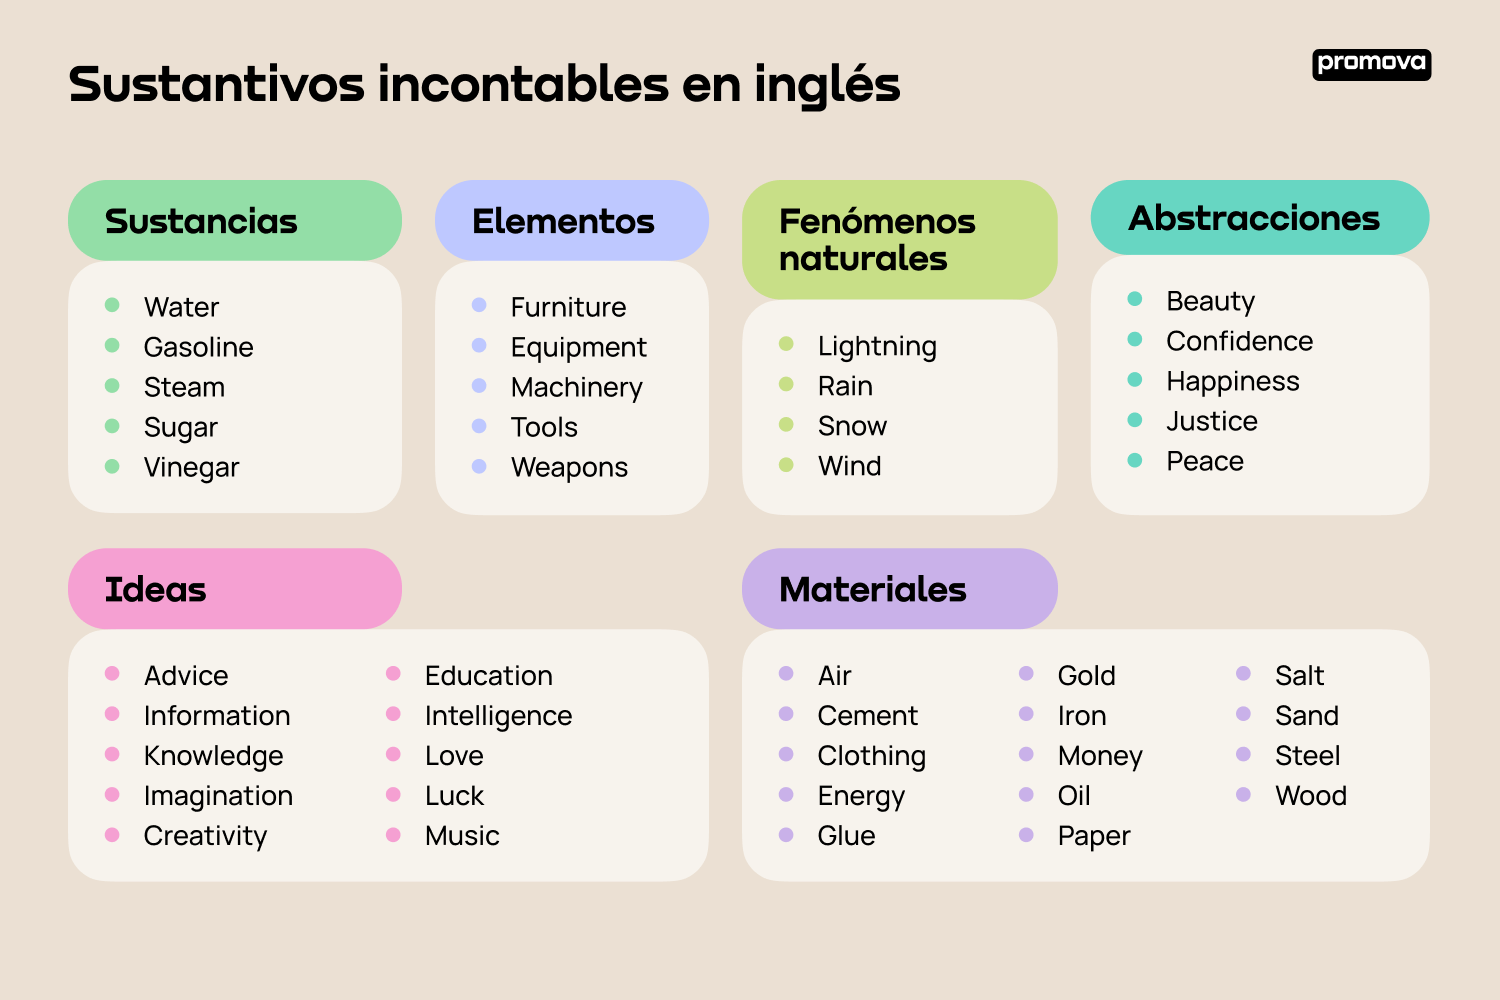 Aprende sobre los sustantivos incontables en inglés: Palabras clave